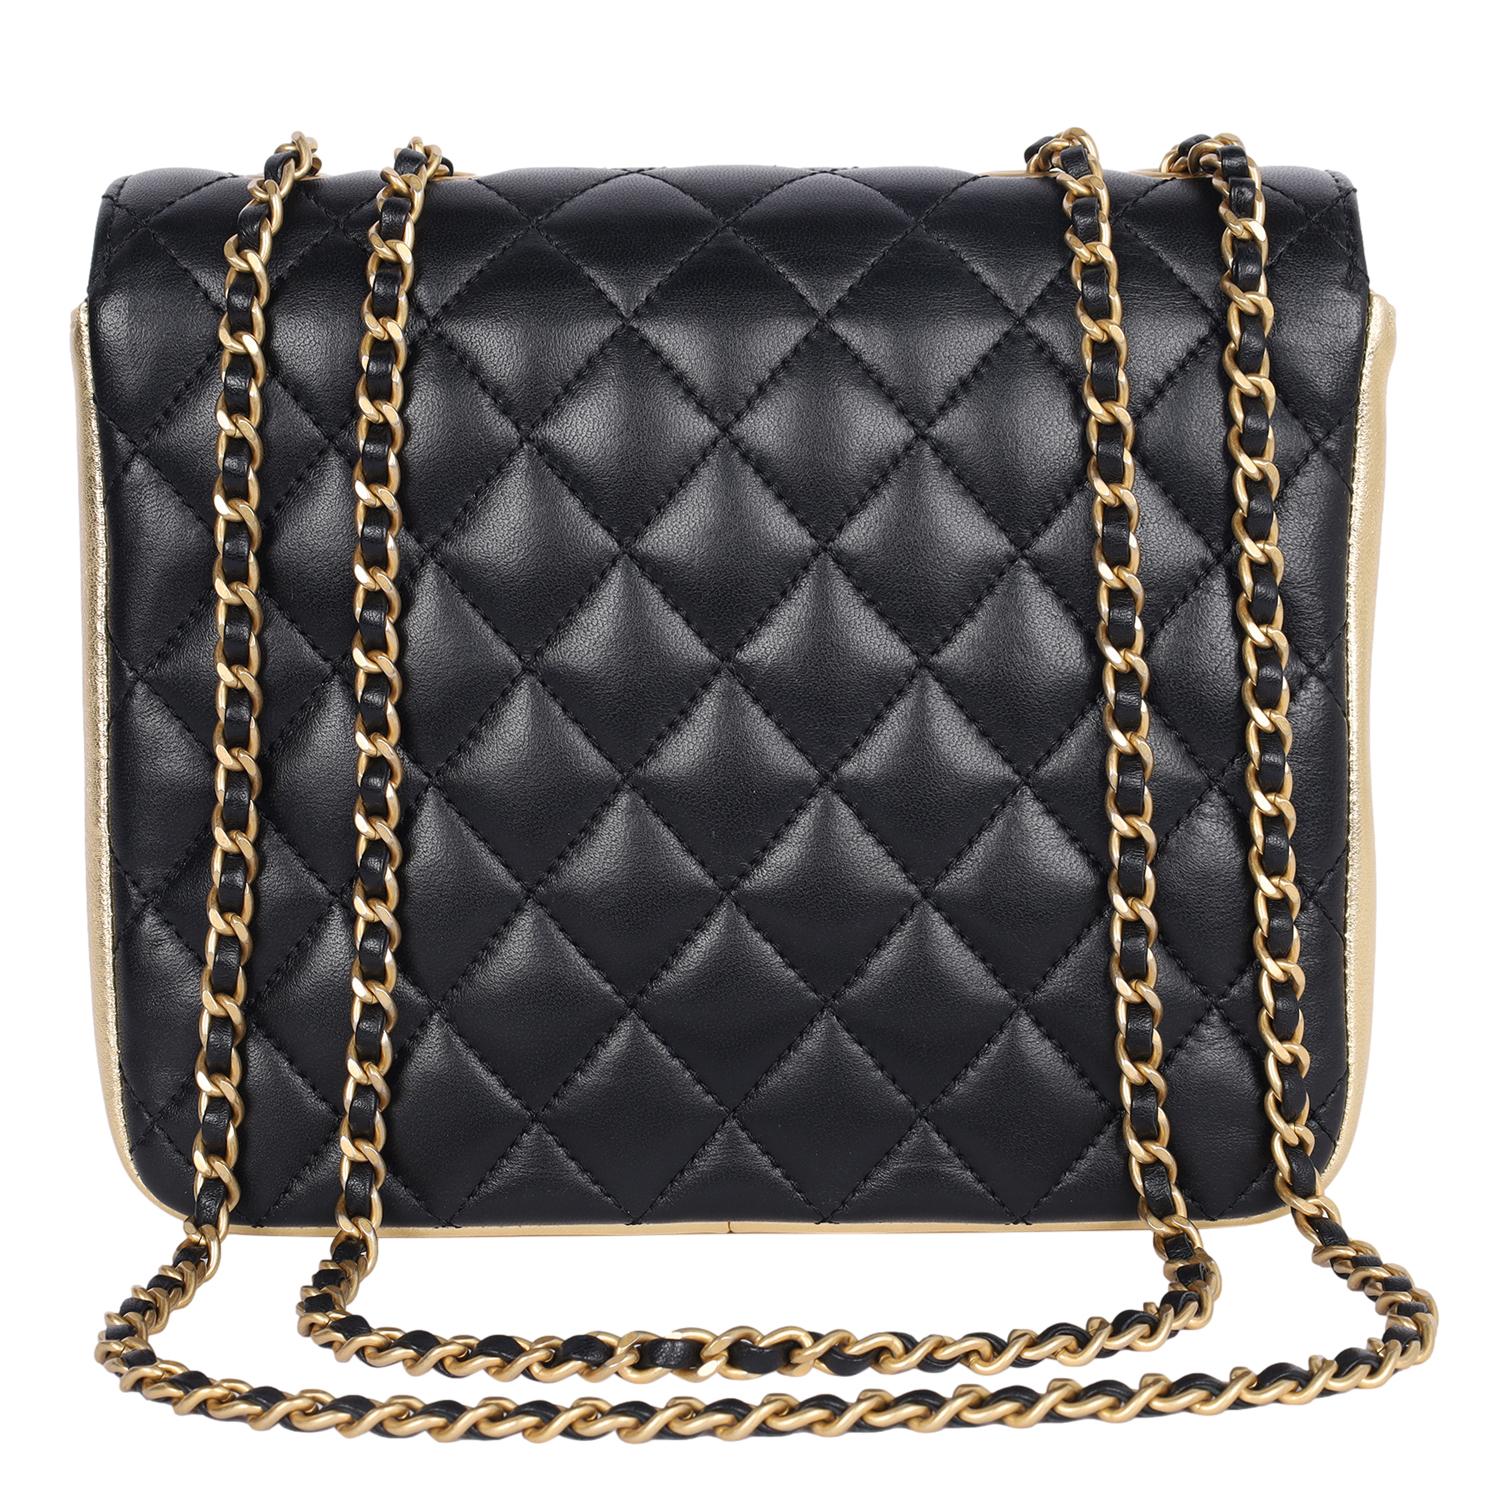 Authentisch, pre-loved Chanel schwarz Doppelklappe gesteppt Lammfell Leder Schulter Cross Body Bag. Gestepptes Leder mit goldenen Akzenten, goldene CC-Hardware, ein langer goldener Kettenriemen mit Ledereinsatz, CC-Verschluss vorne. Die